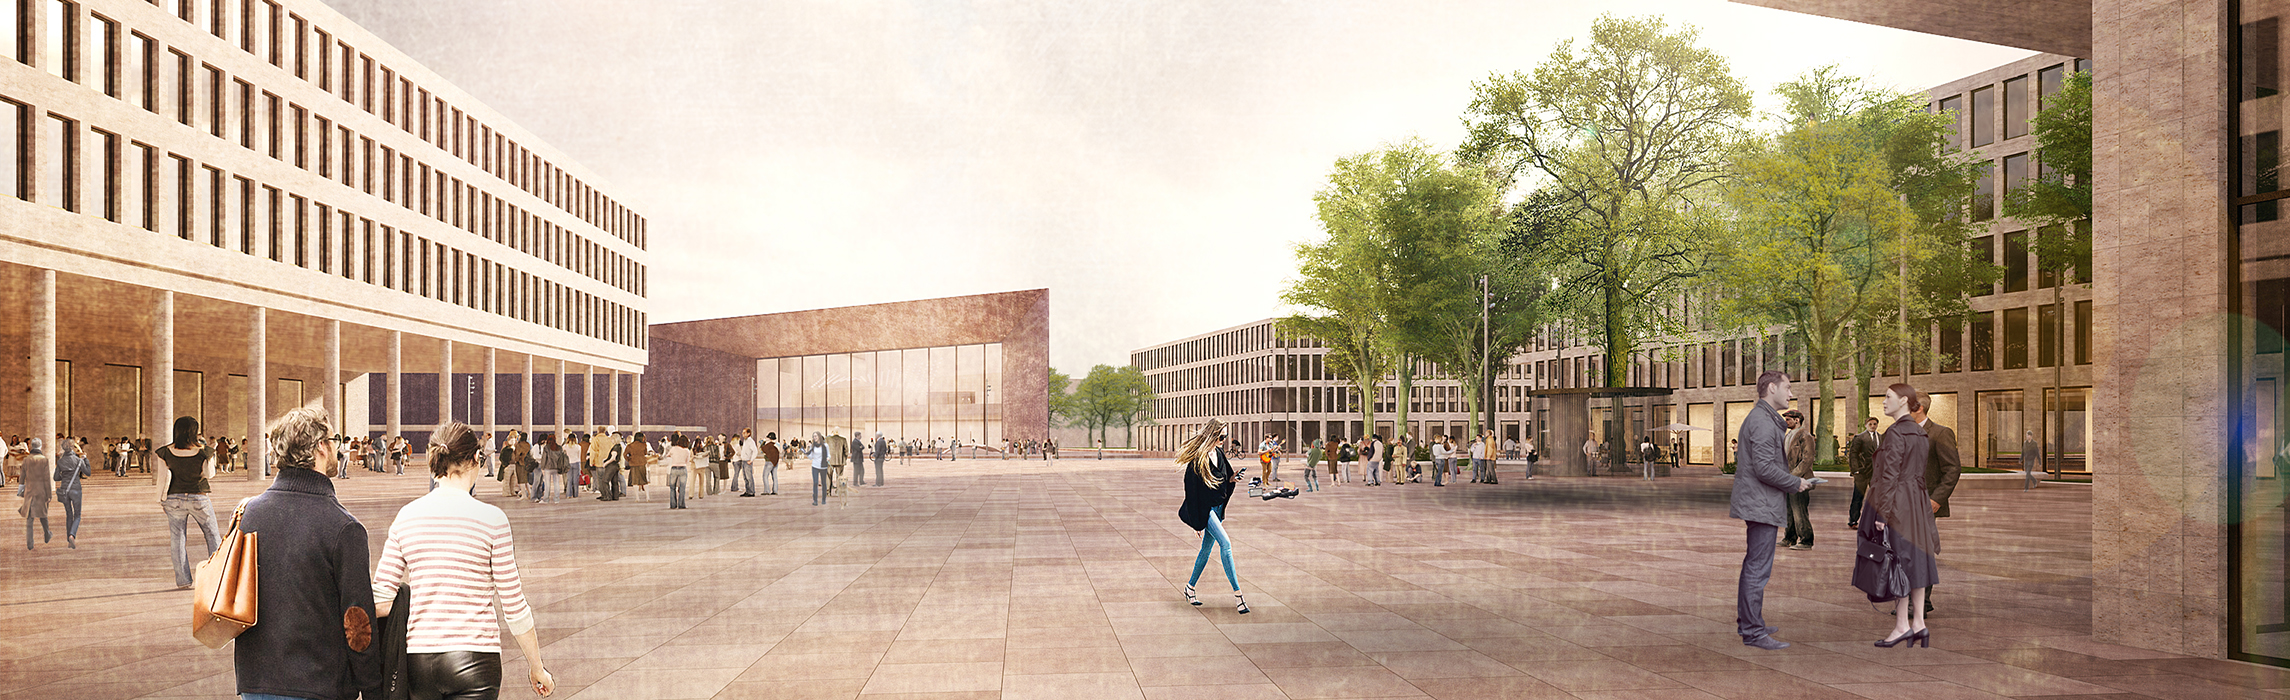 Visualisierung des neuen Europaplatzes mit Blick auf das künftige Konferenzzentrum. (Quelle: POLA Landschaftsarchitekten)